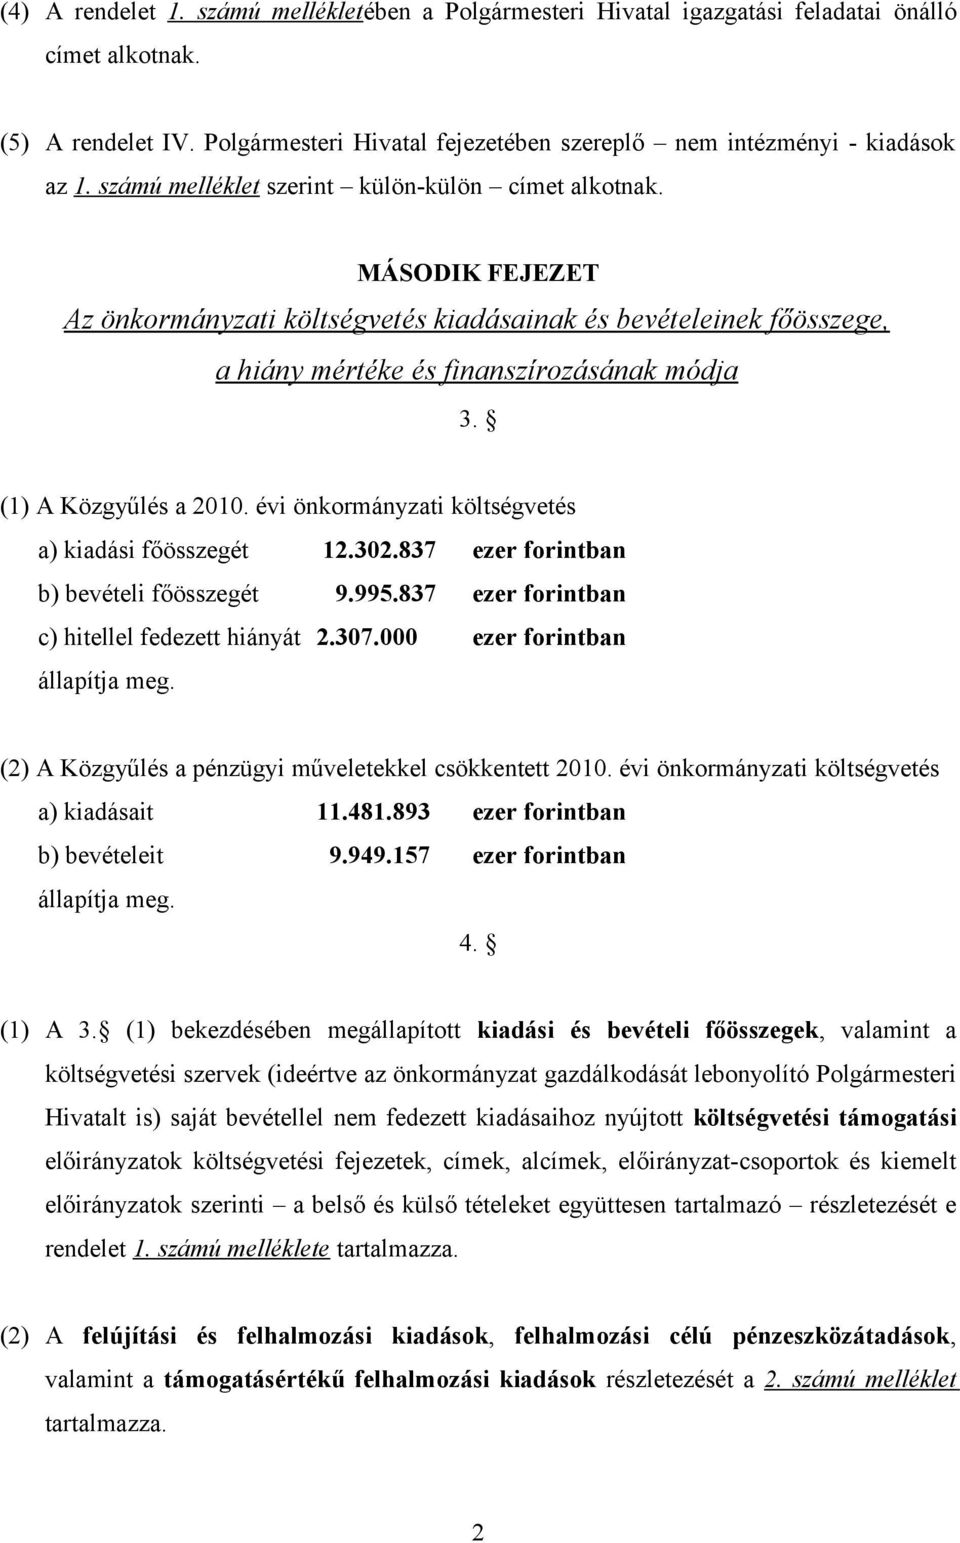 (1) A Közgyűlés a 2010. évi önkormányzati költségvetés a) kiadási főösszegét 12.302.837 ezer forintban b) bevételi főösszegét 9.995.837 ezer forintban c) hitellel fedezett hiányát 2.307.